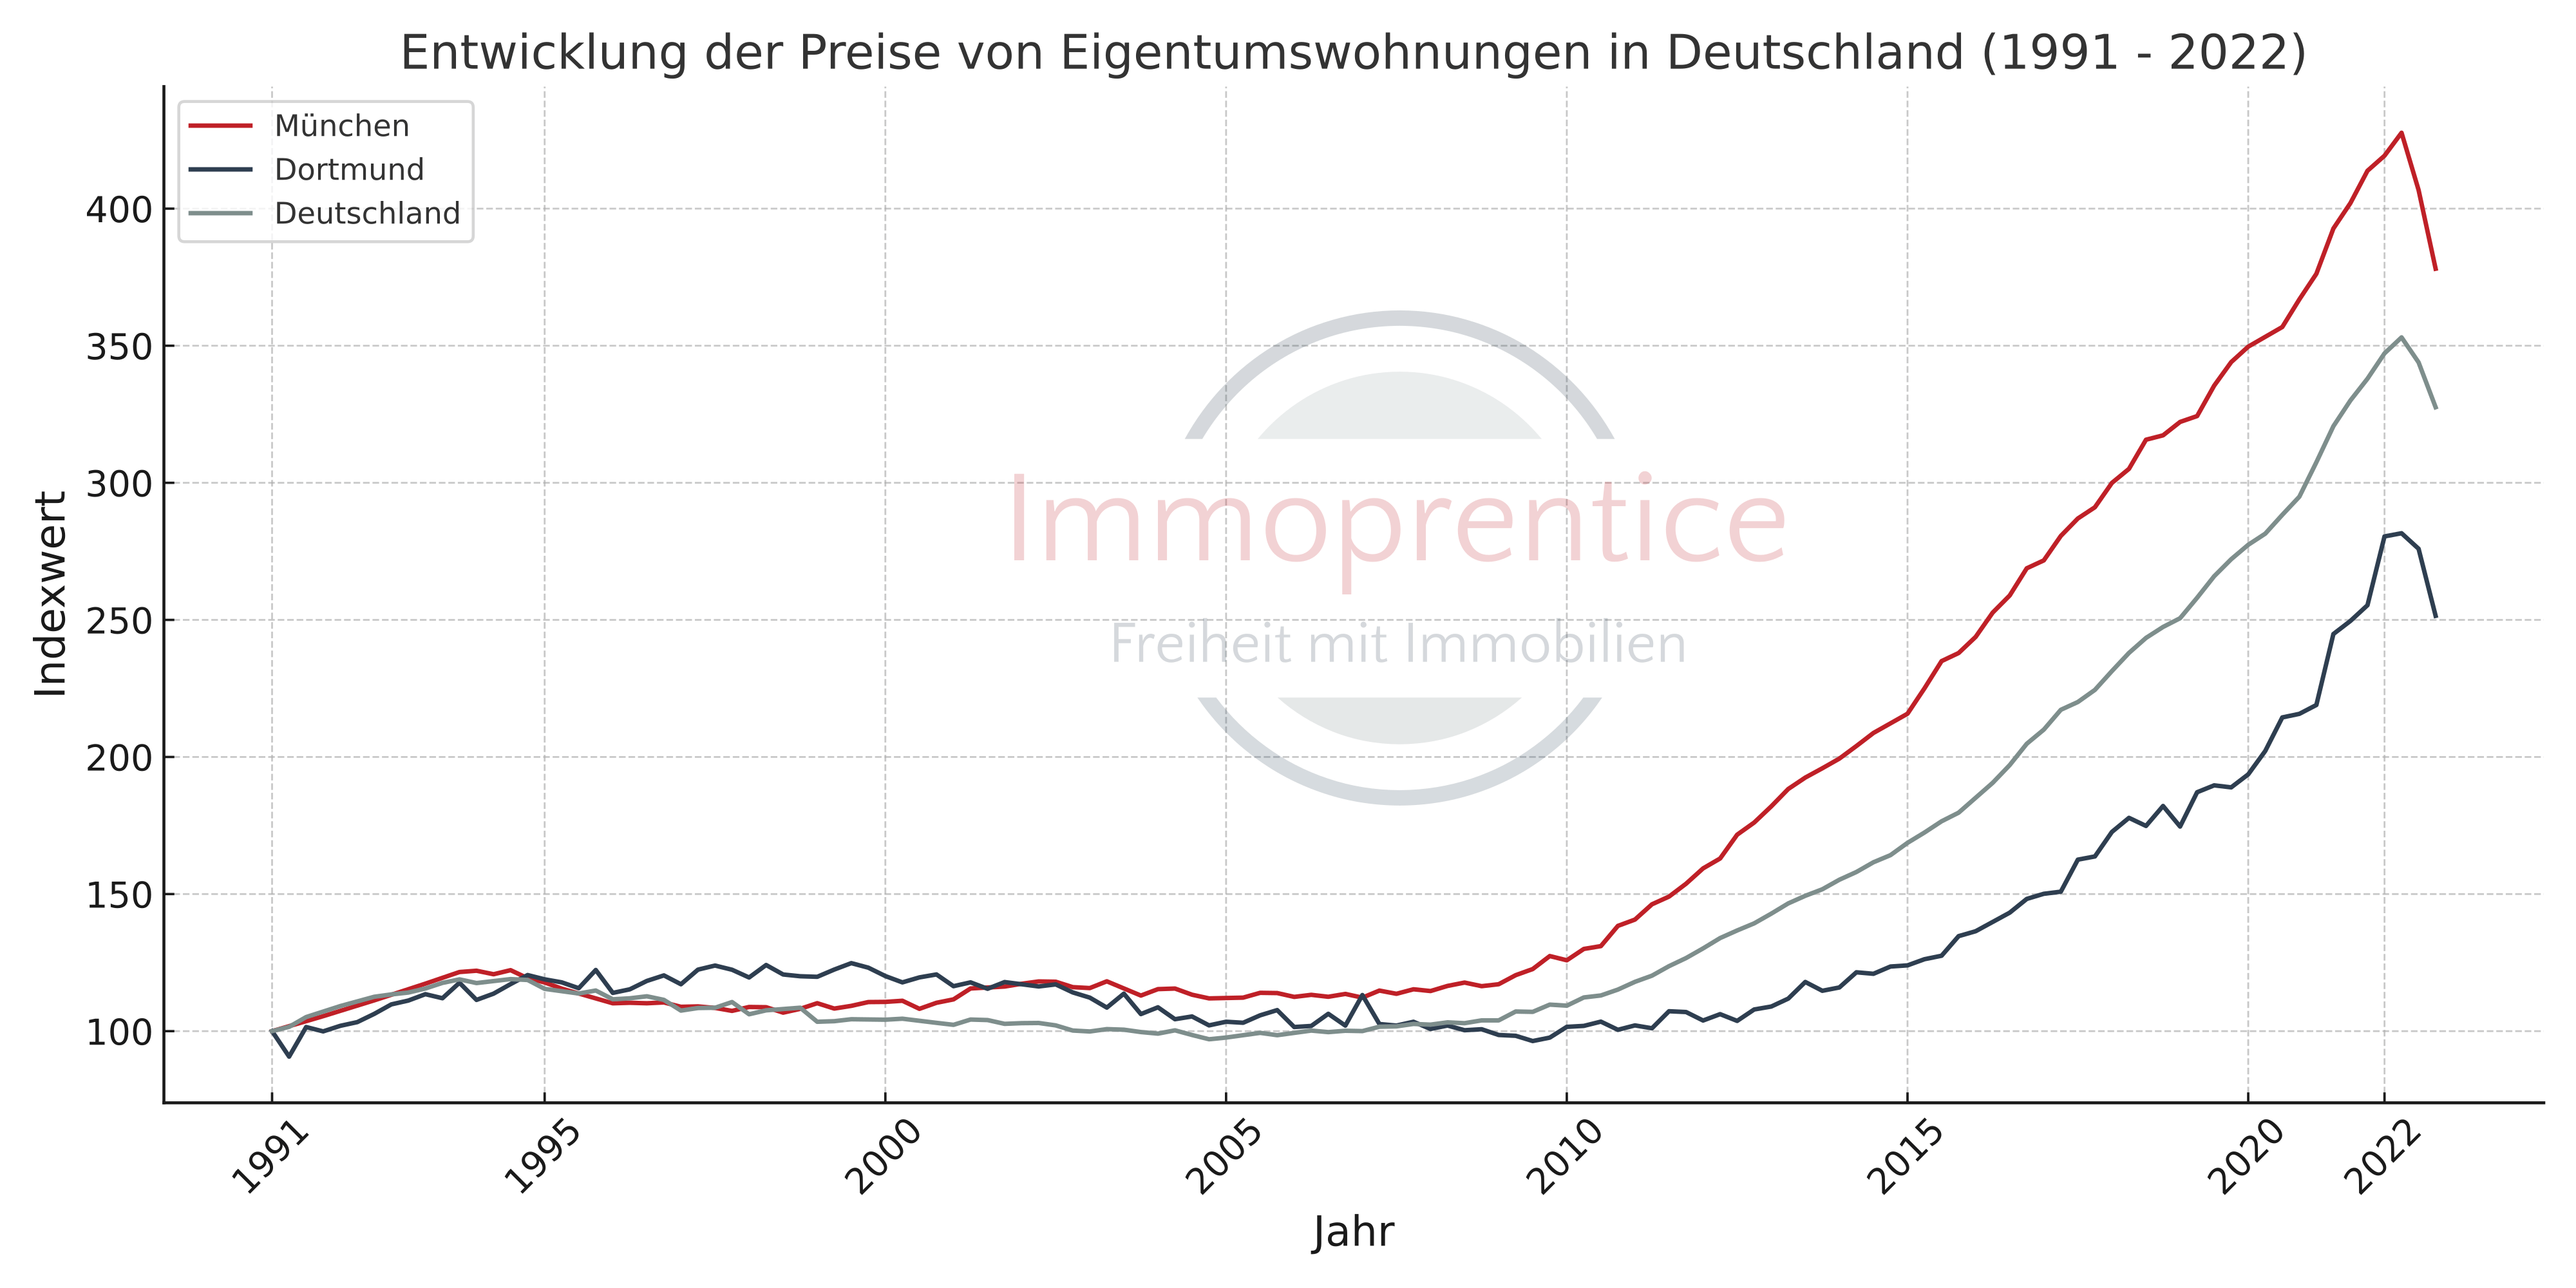 Die Immobilienpreisentwicklung in München, Dortmund und dem gesamten deutschen Immobilienmarkt. Gerade in den vergangenen Jahren haben Immobilien aufgrund der hohen Inflation hohe Wertzuwächse erwirtschaften können. (Quelle: greix.de)